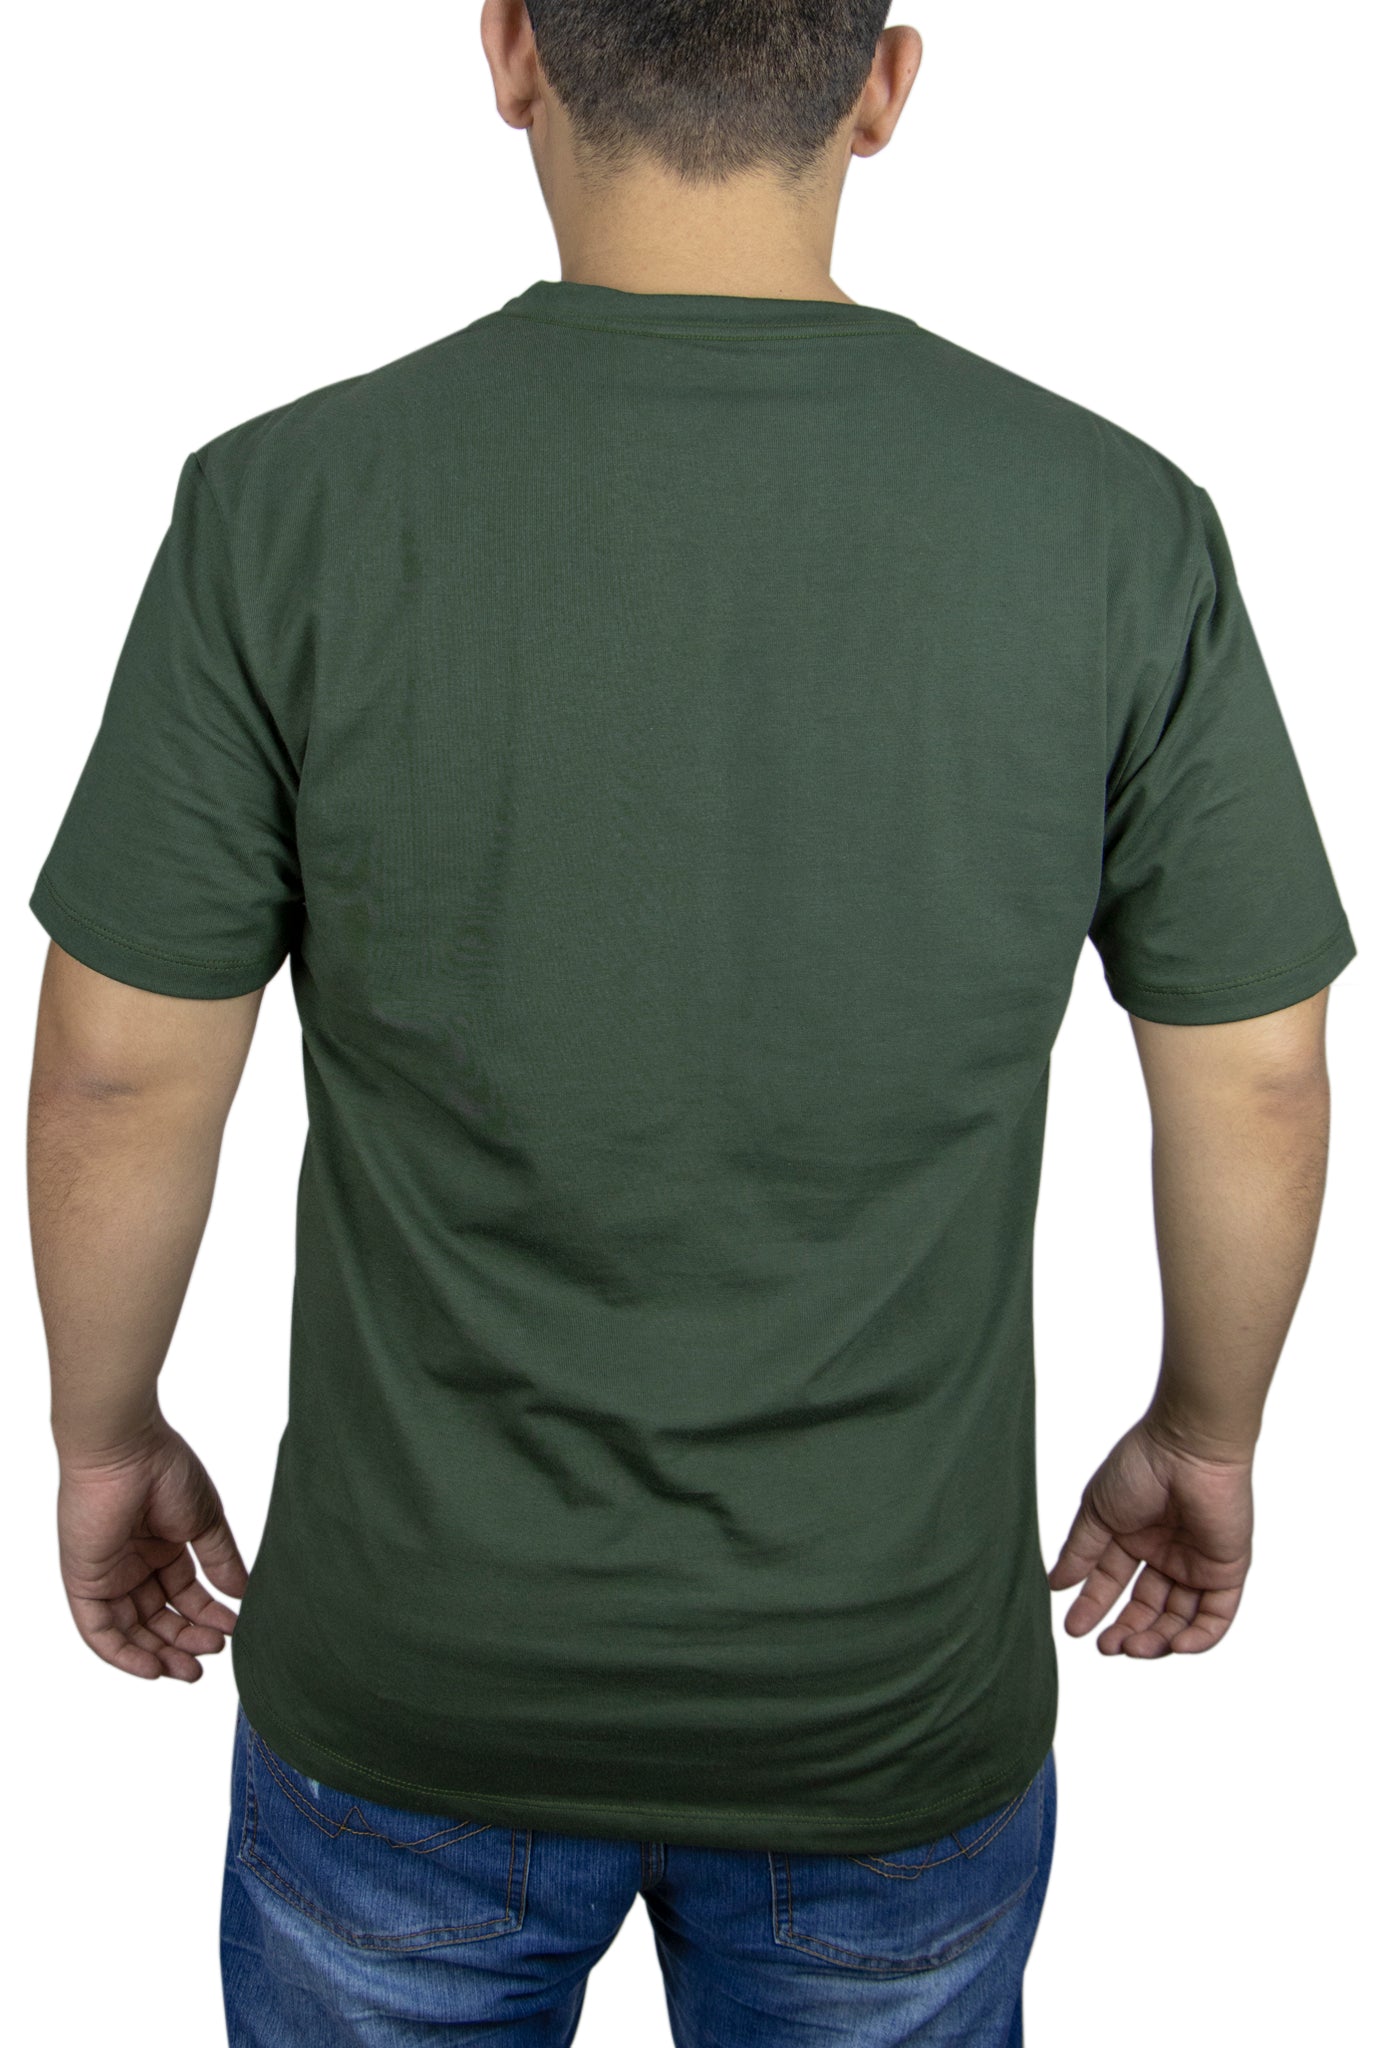 Camiseta-Fist-Básica-Verde-Militar